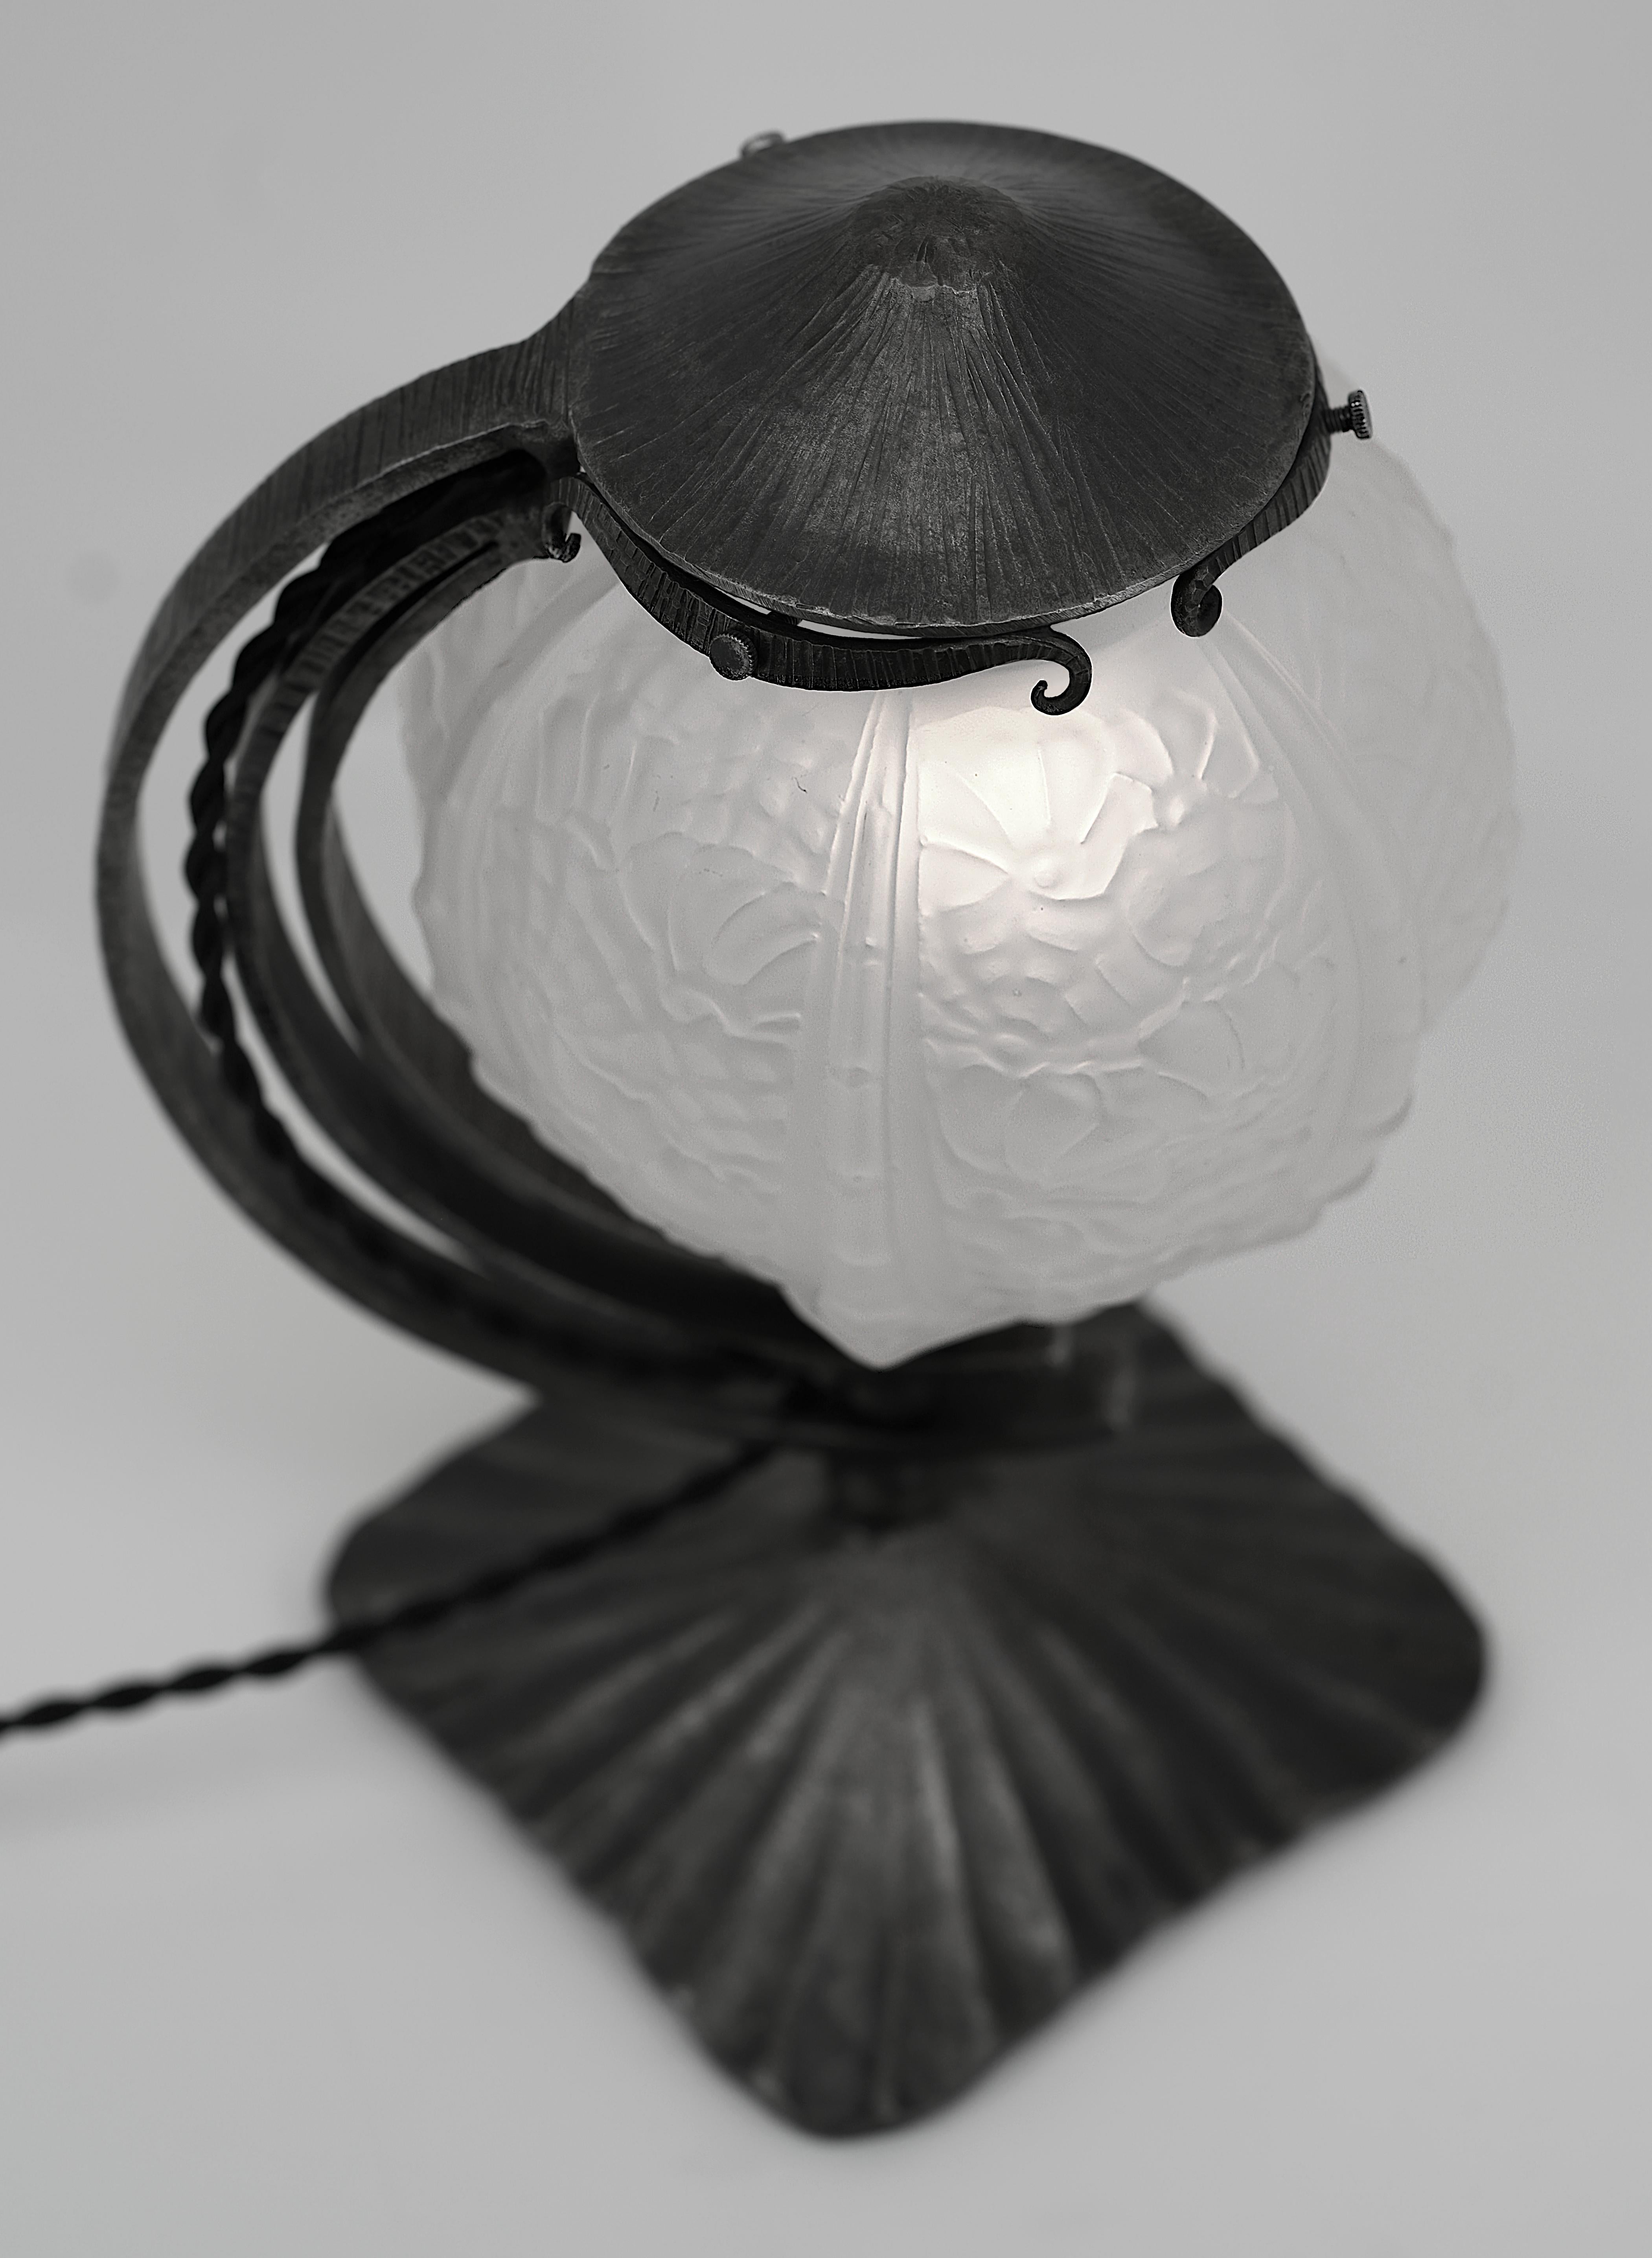 Cherrier & Besnus French Art Deco Table Lamp, Ca.1925 For Sale 1